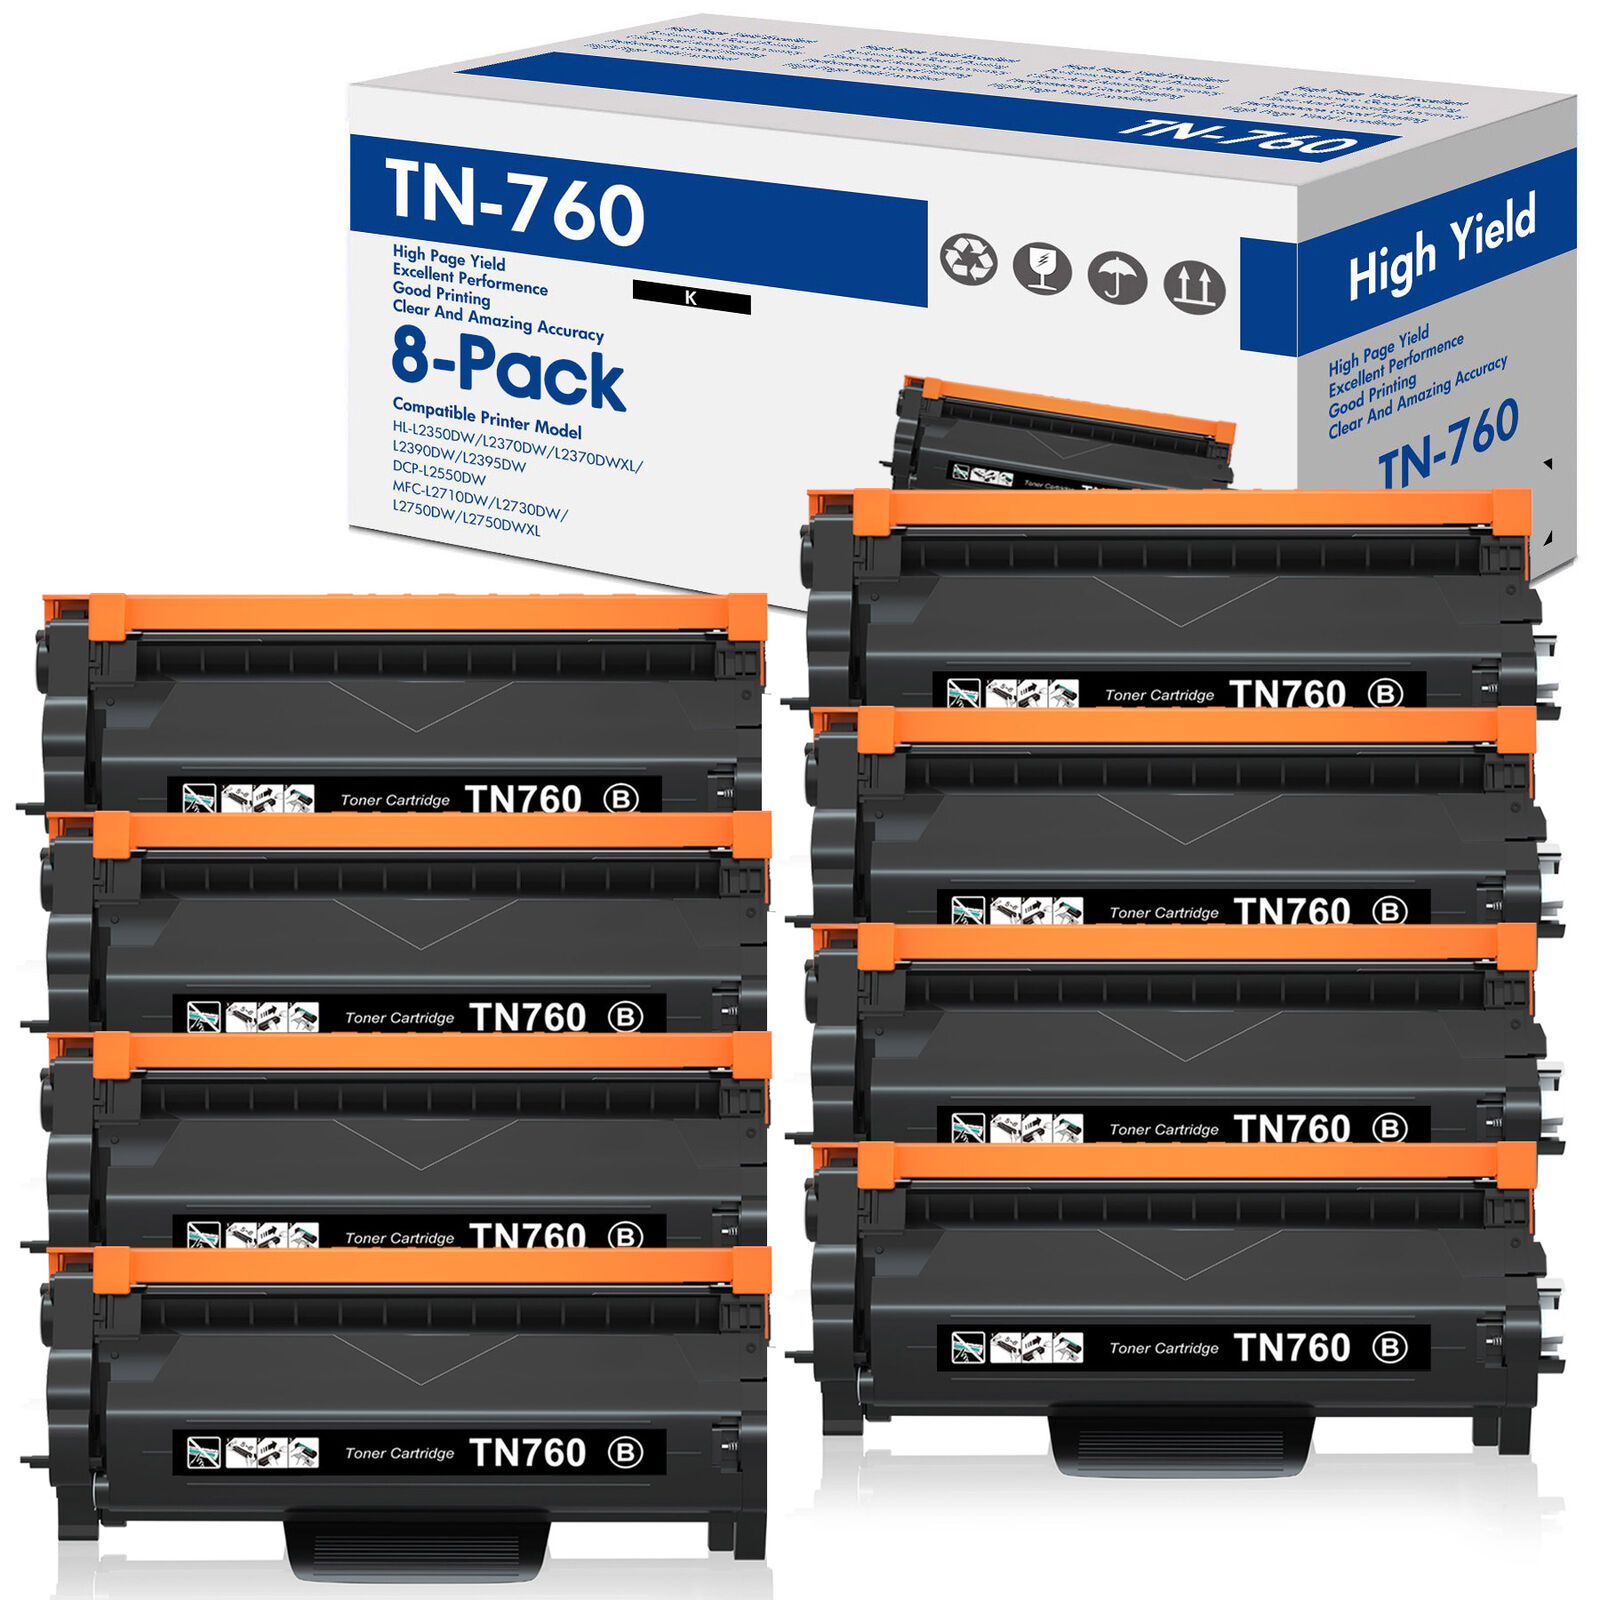 8x Toner Cartridges for Brother TN760 HL-L2370DW L2370DWXL MFC-L2750DW Printer